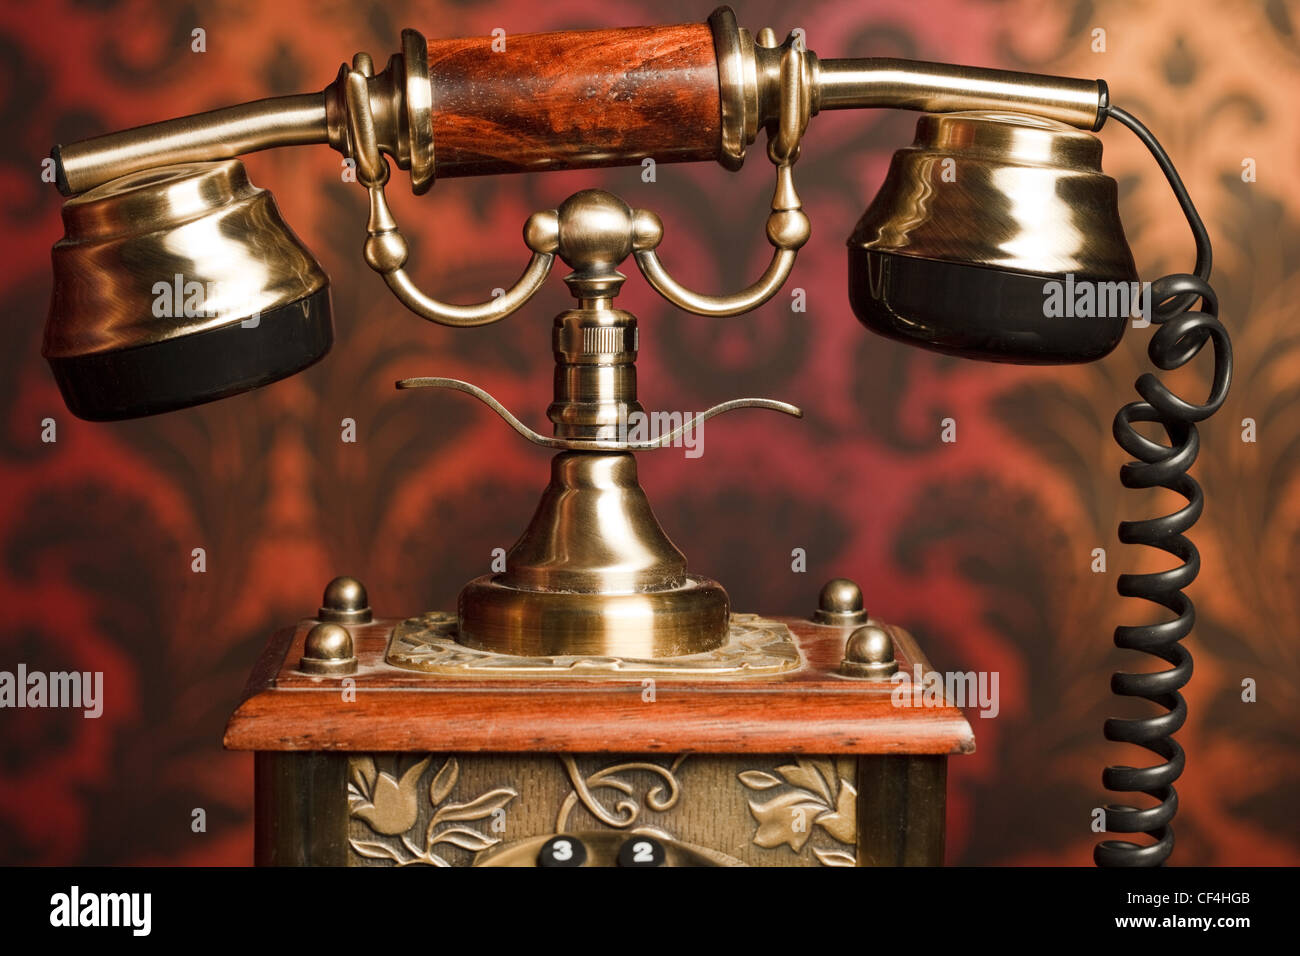 Fragmento de un antiguo teléfono hechas de metal con un mango de madera. retirado contra el arnament Foto de stock